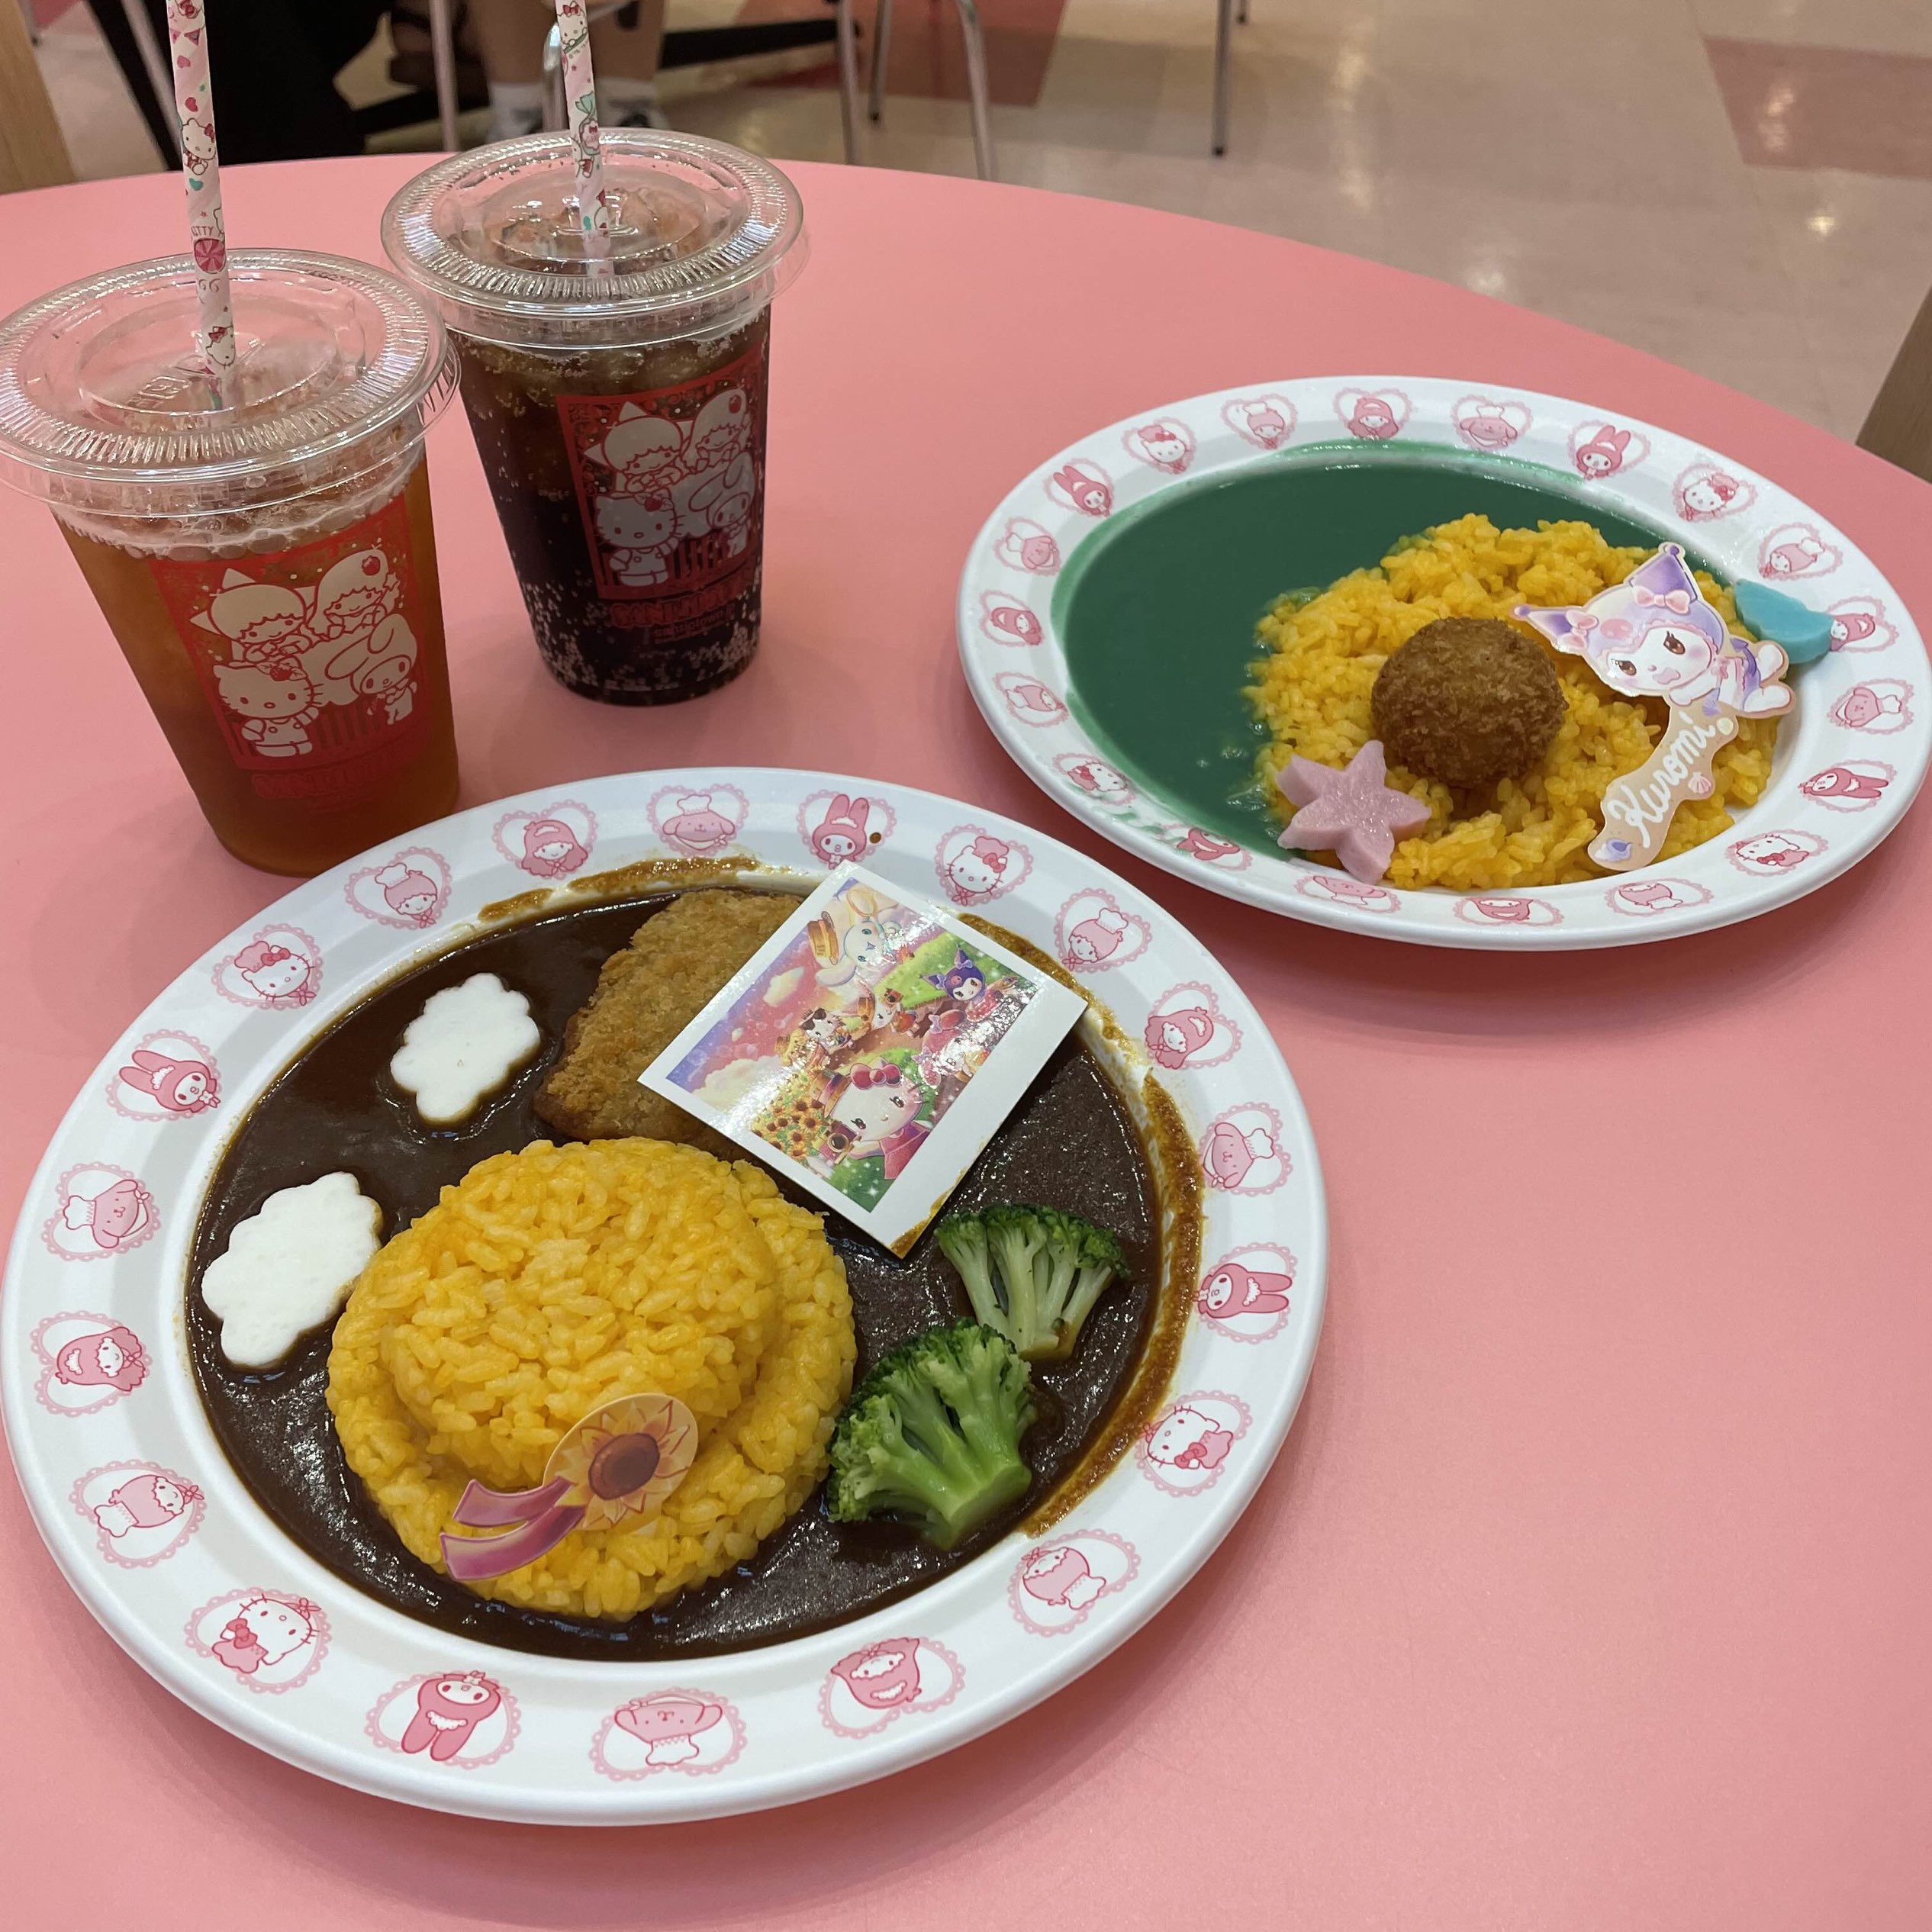 三丽鸥彩虹乐园的Instagram美食之旅